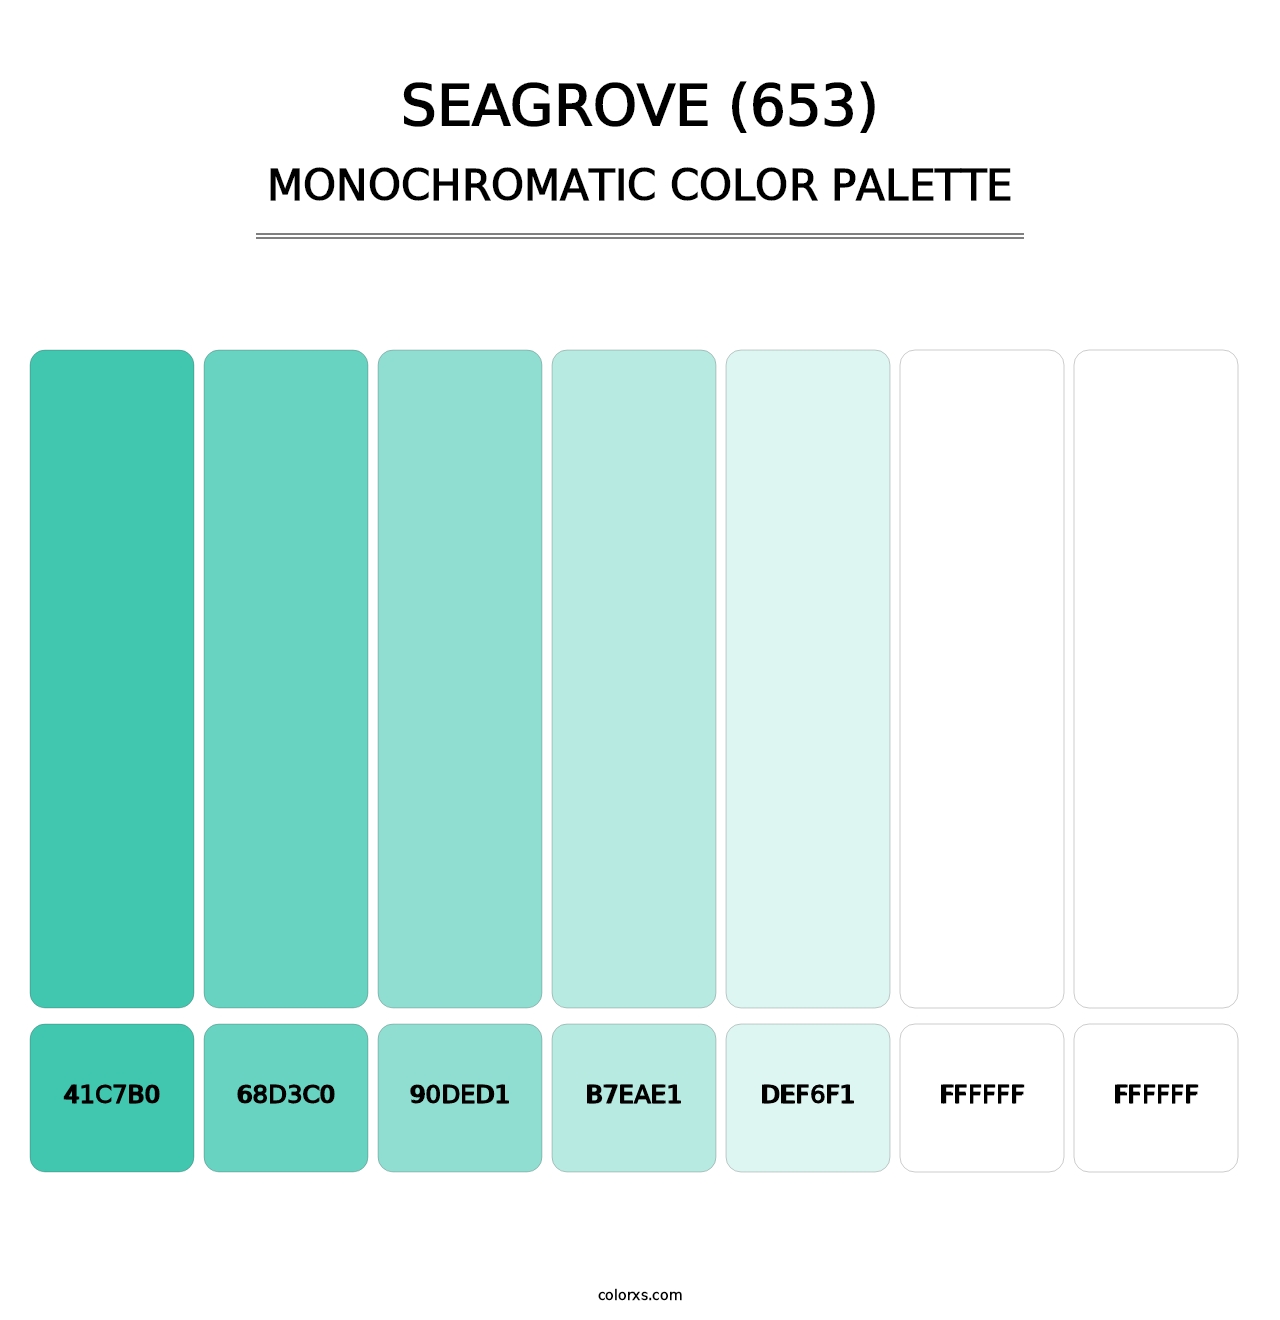 Seagrove (653) - Monochromatic Color Palette